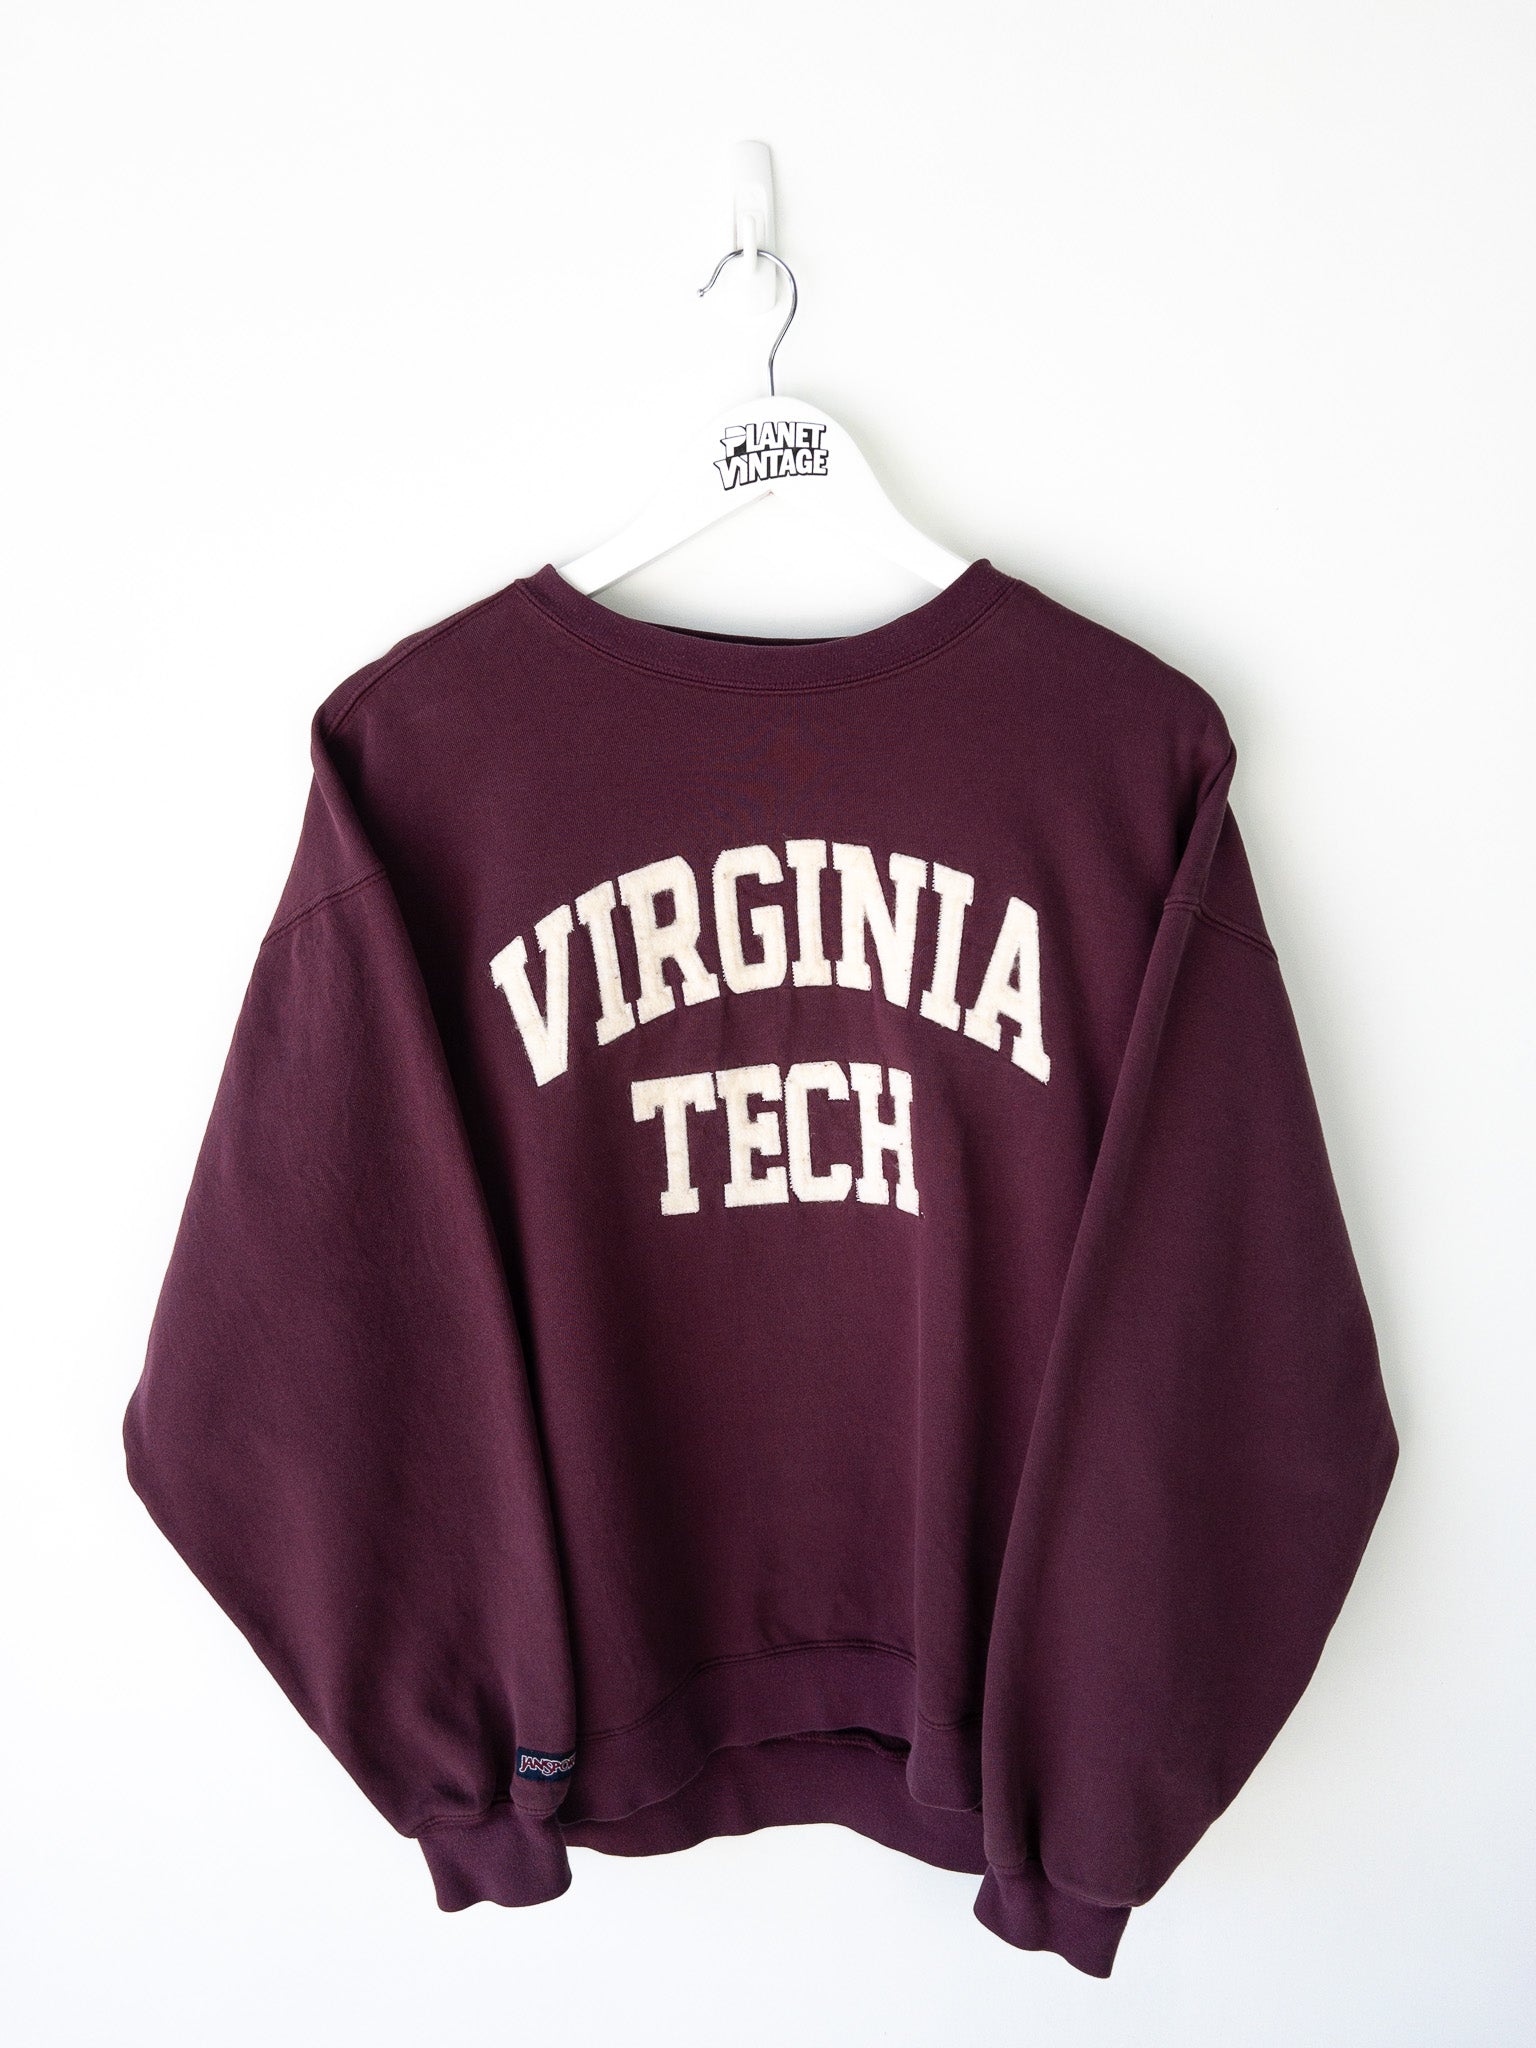 Vintage Virginia Tech Sweatshirt (L)